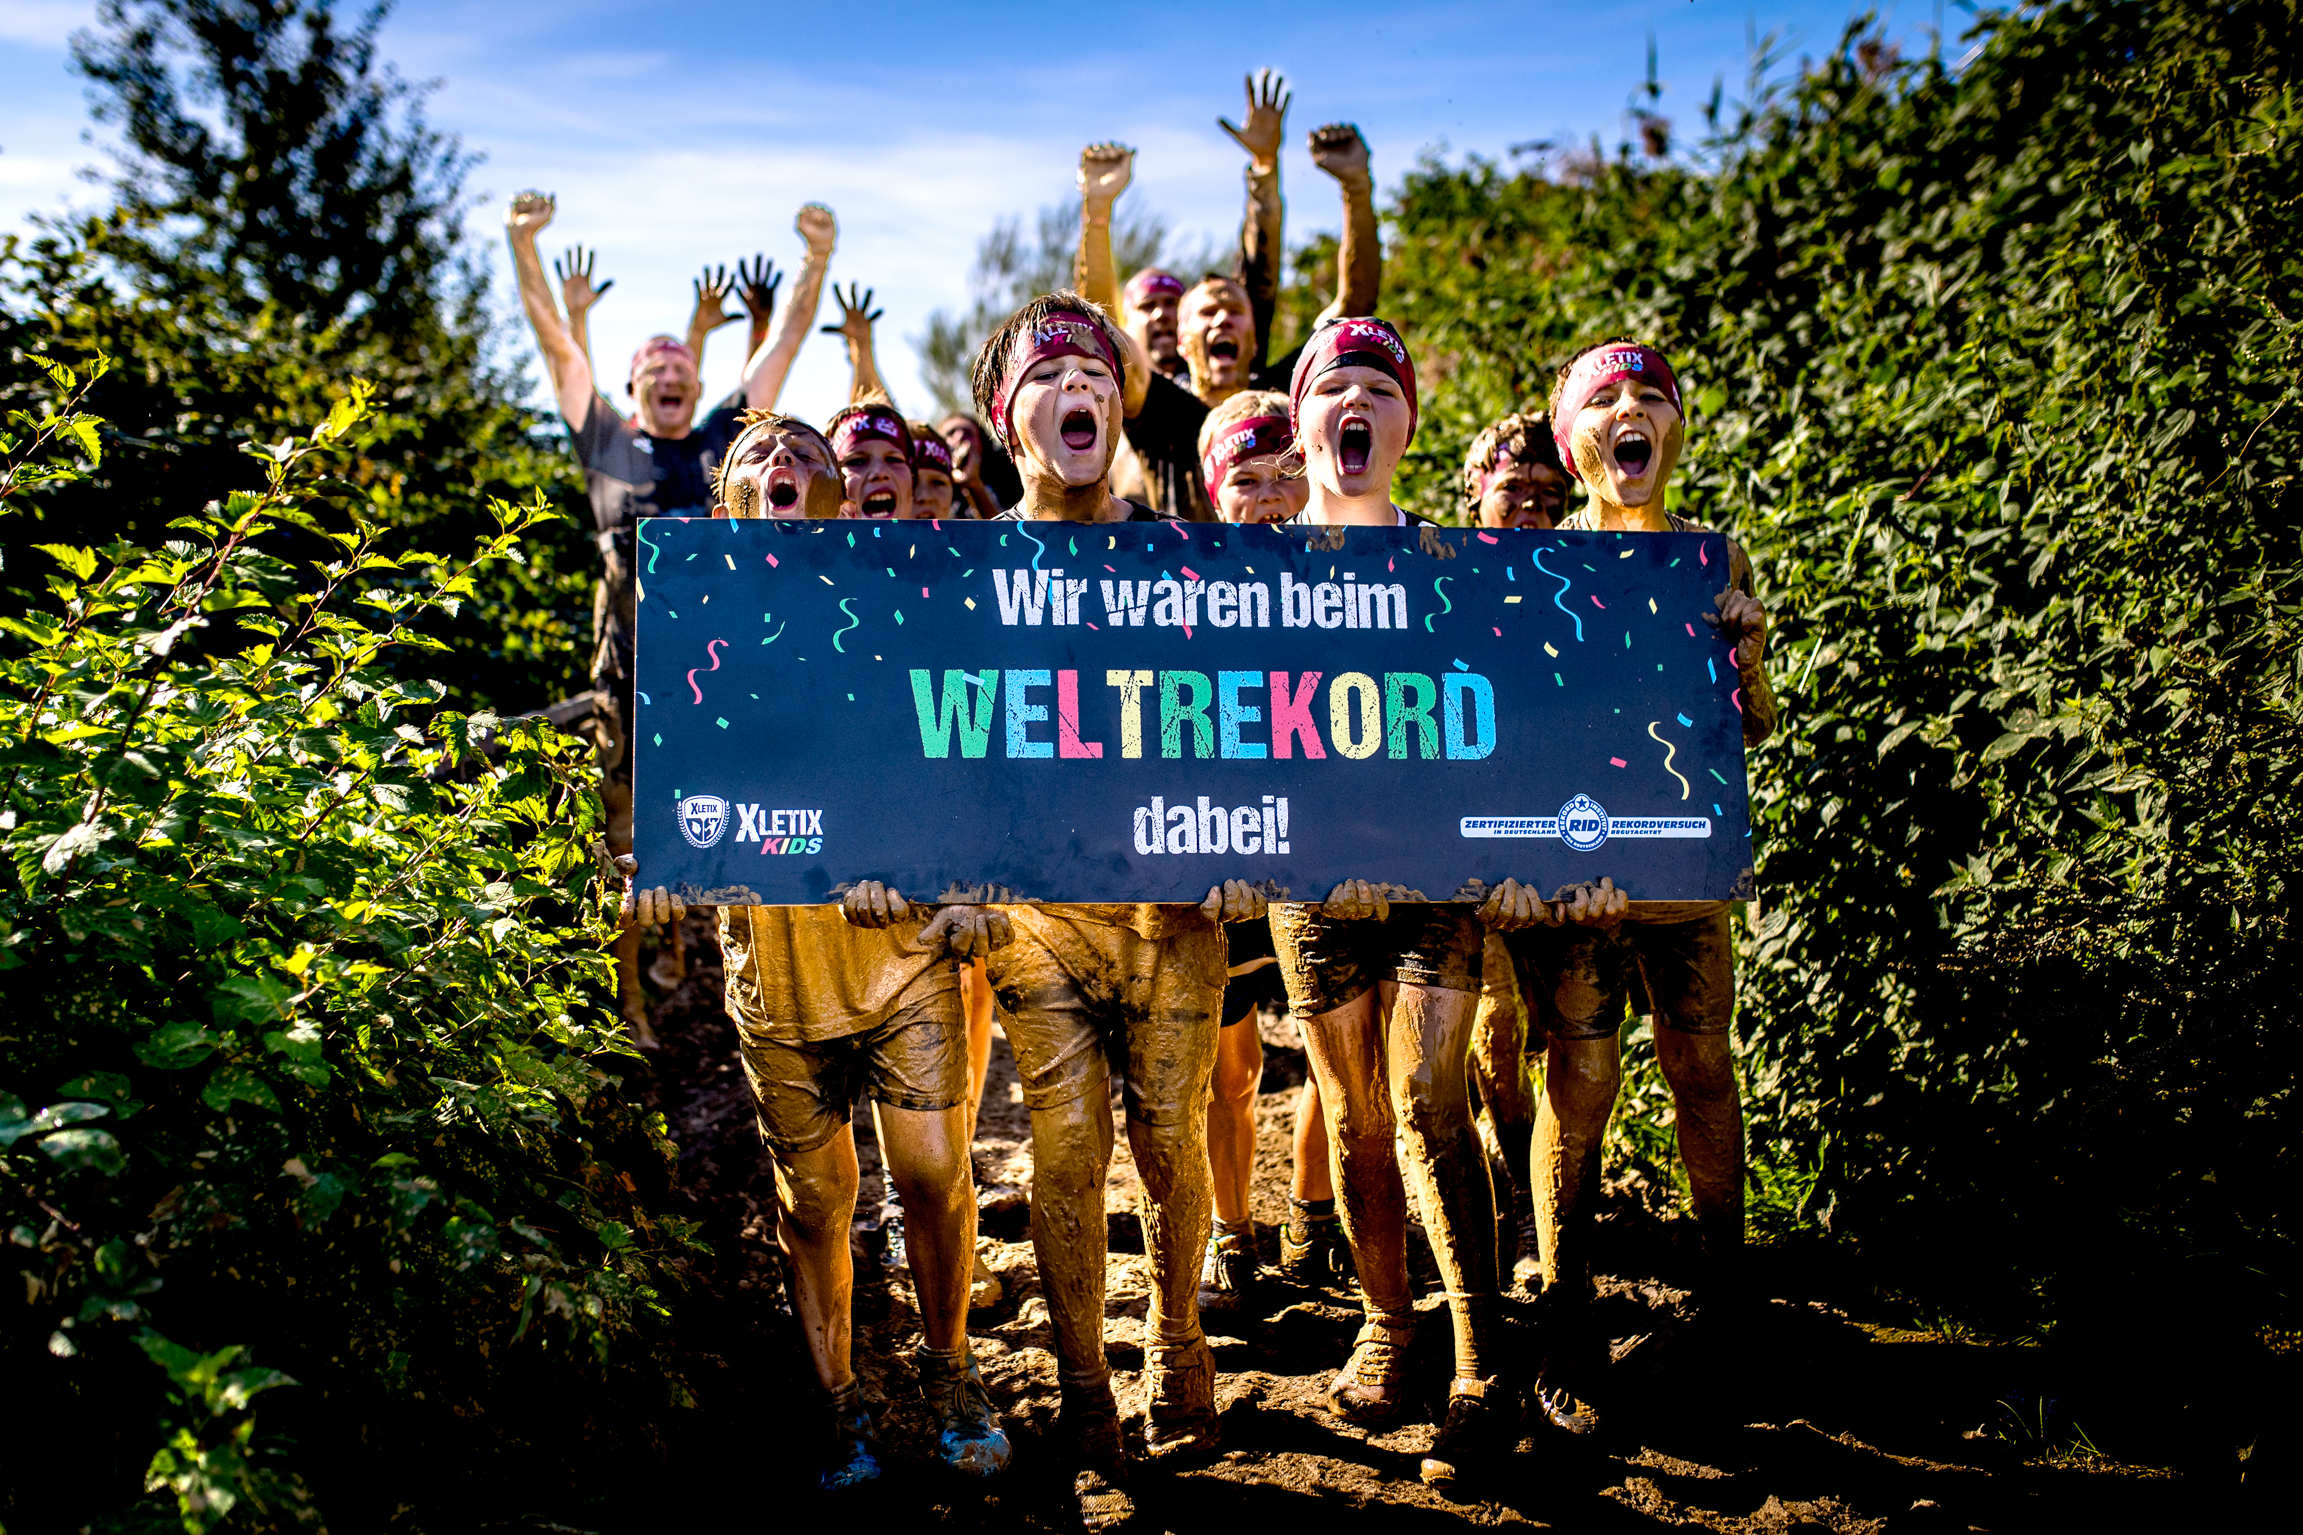 RID-Weltrekord in Hamburg erzielt – Veranstaltung XLETIX Kids« als weltweit